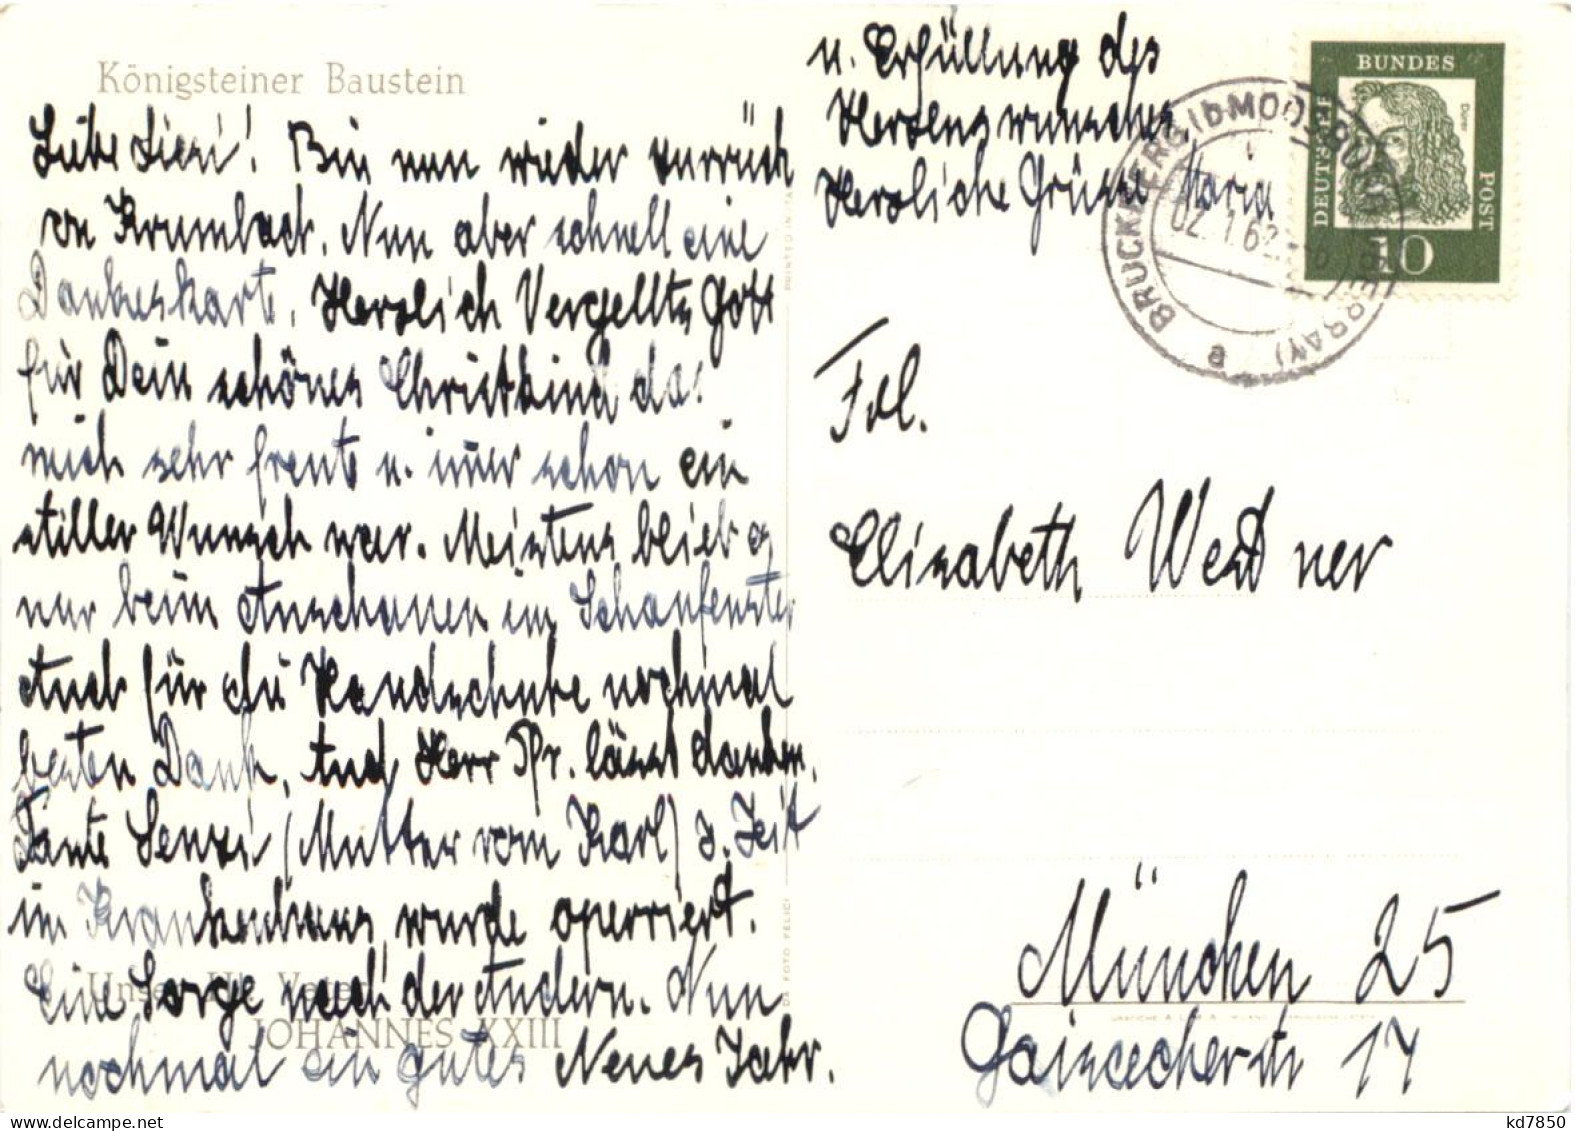 Königsteiner Baustein - Papst Johannes XXIII - Sulzbach-Rosenberg